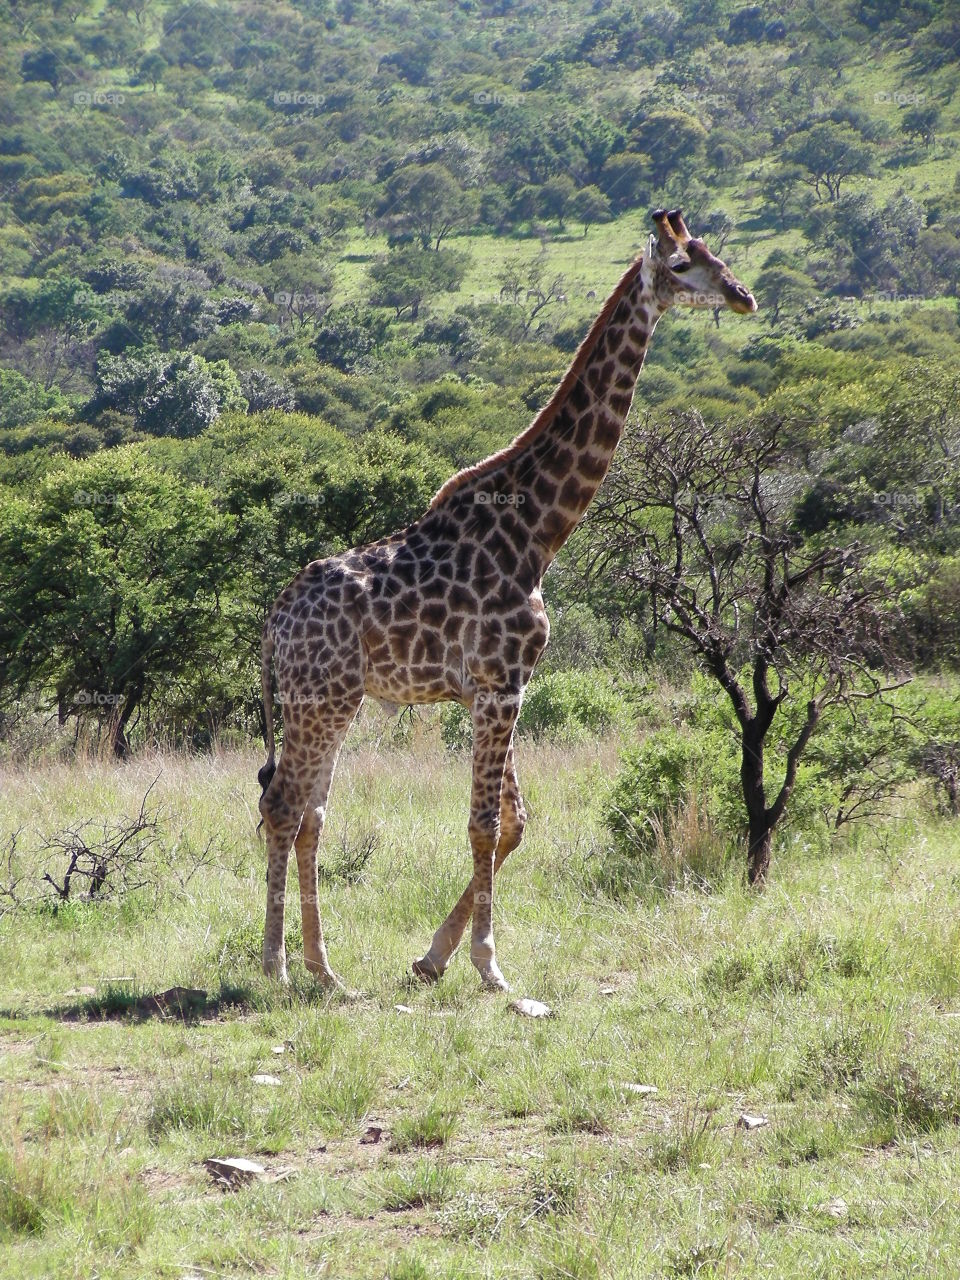 Giraffe taken in Kruger National Park